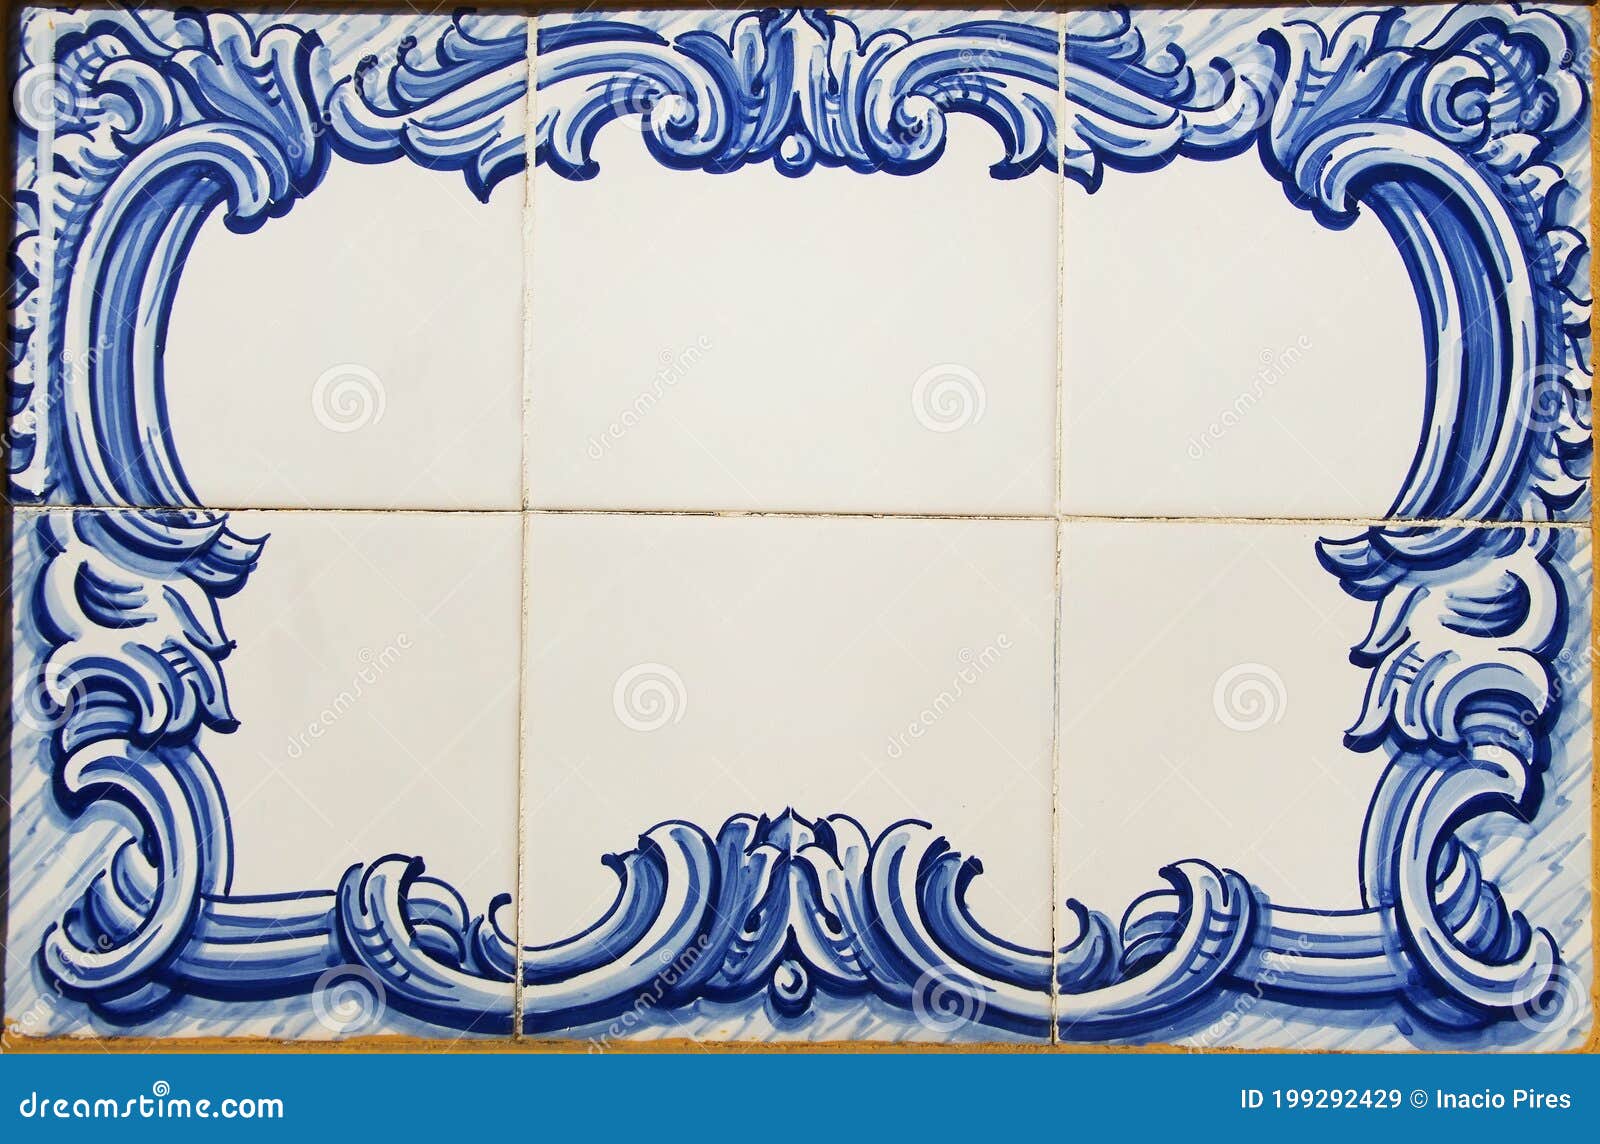 blue tiles of portuguese plaque